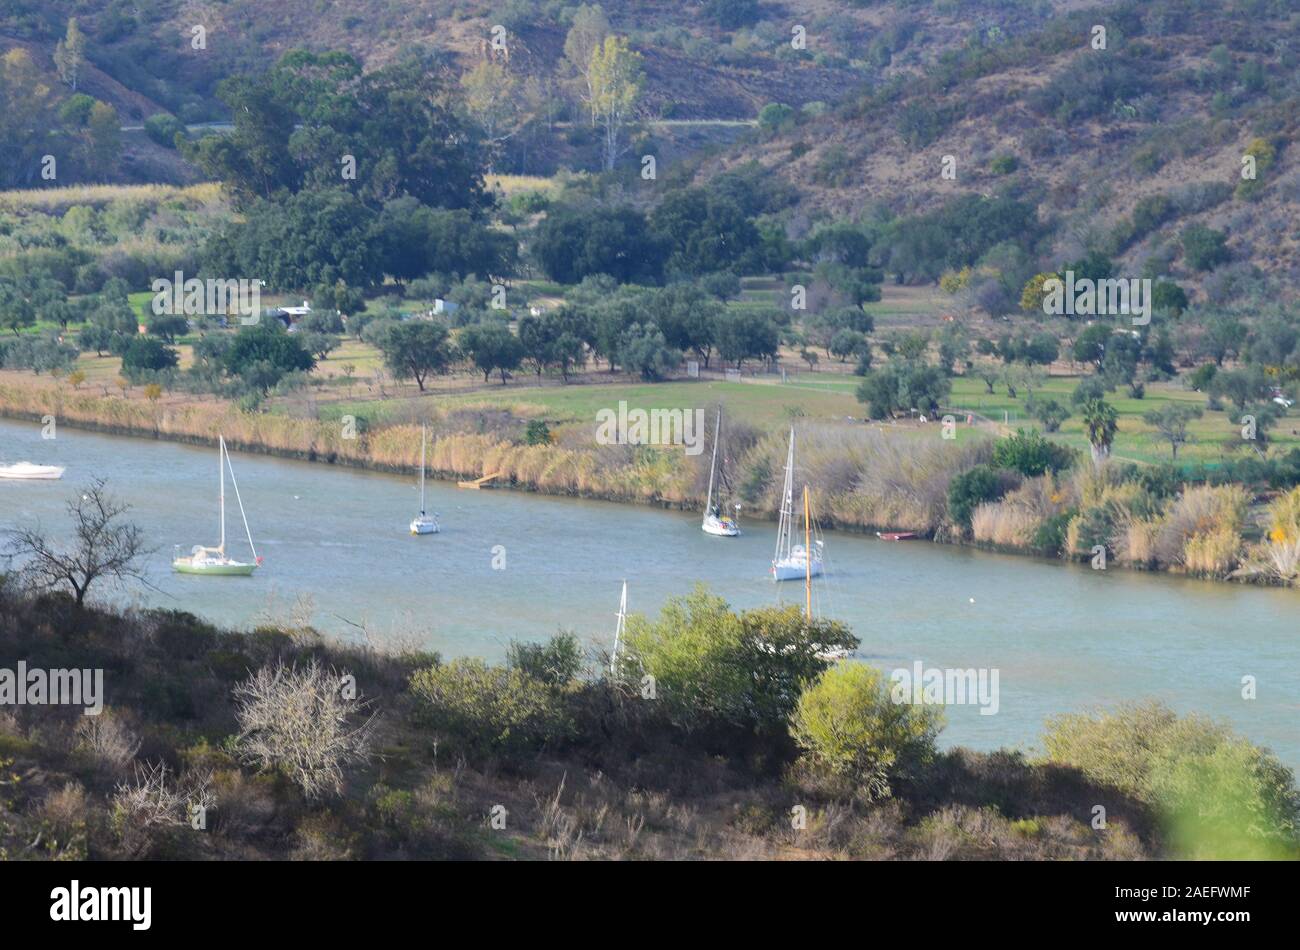 Segelboote in der unteren Fluss Guadiana, der die Grenze zwischen Portugal und Spanien serviert Stockfoto